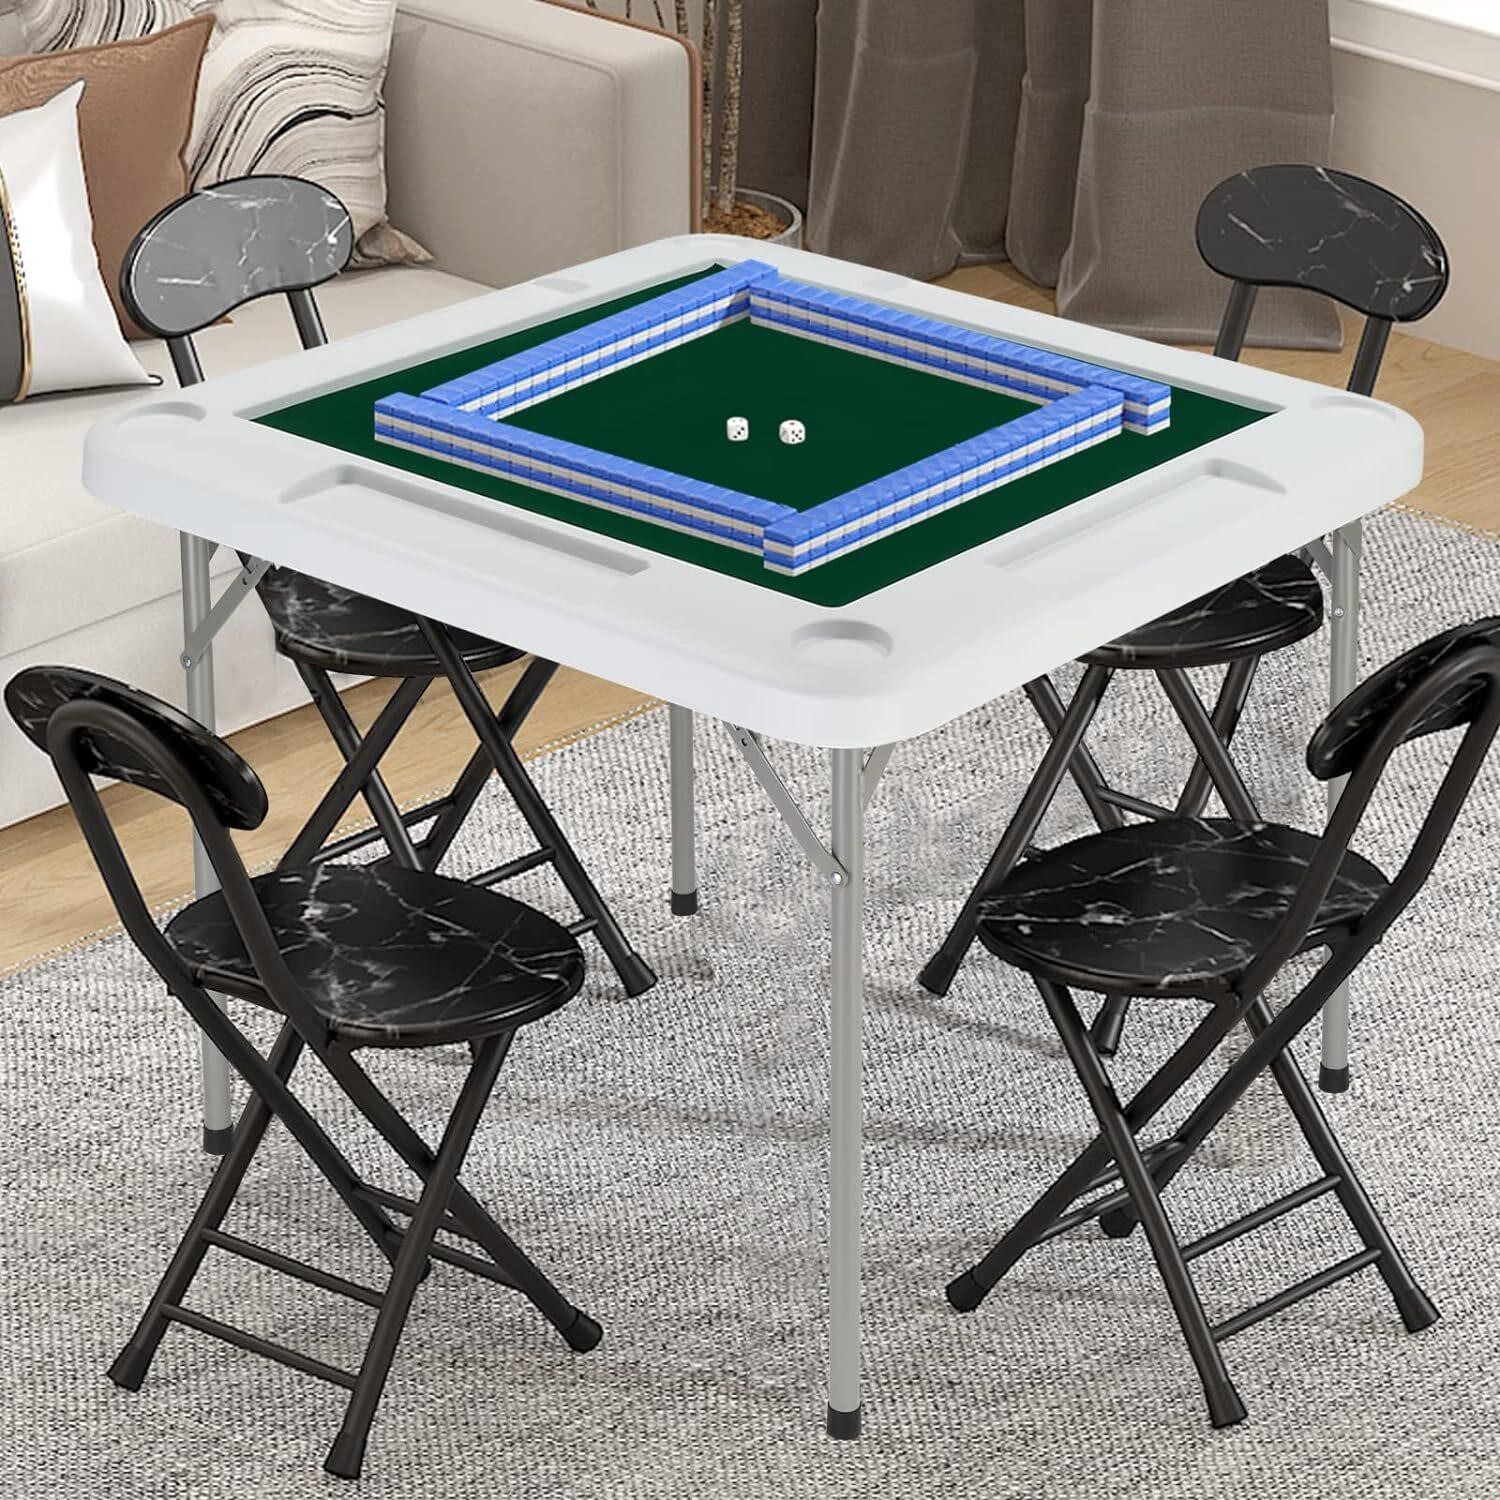 PEXMOR 35 Foldable 4 Player Mahjong Table.